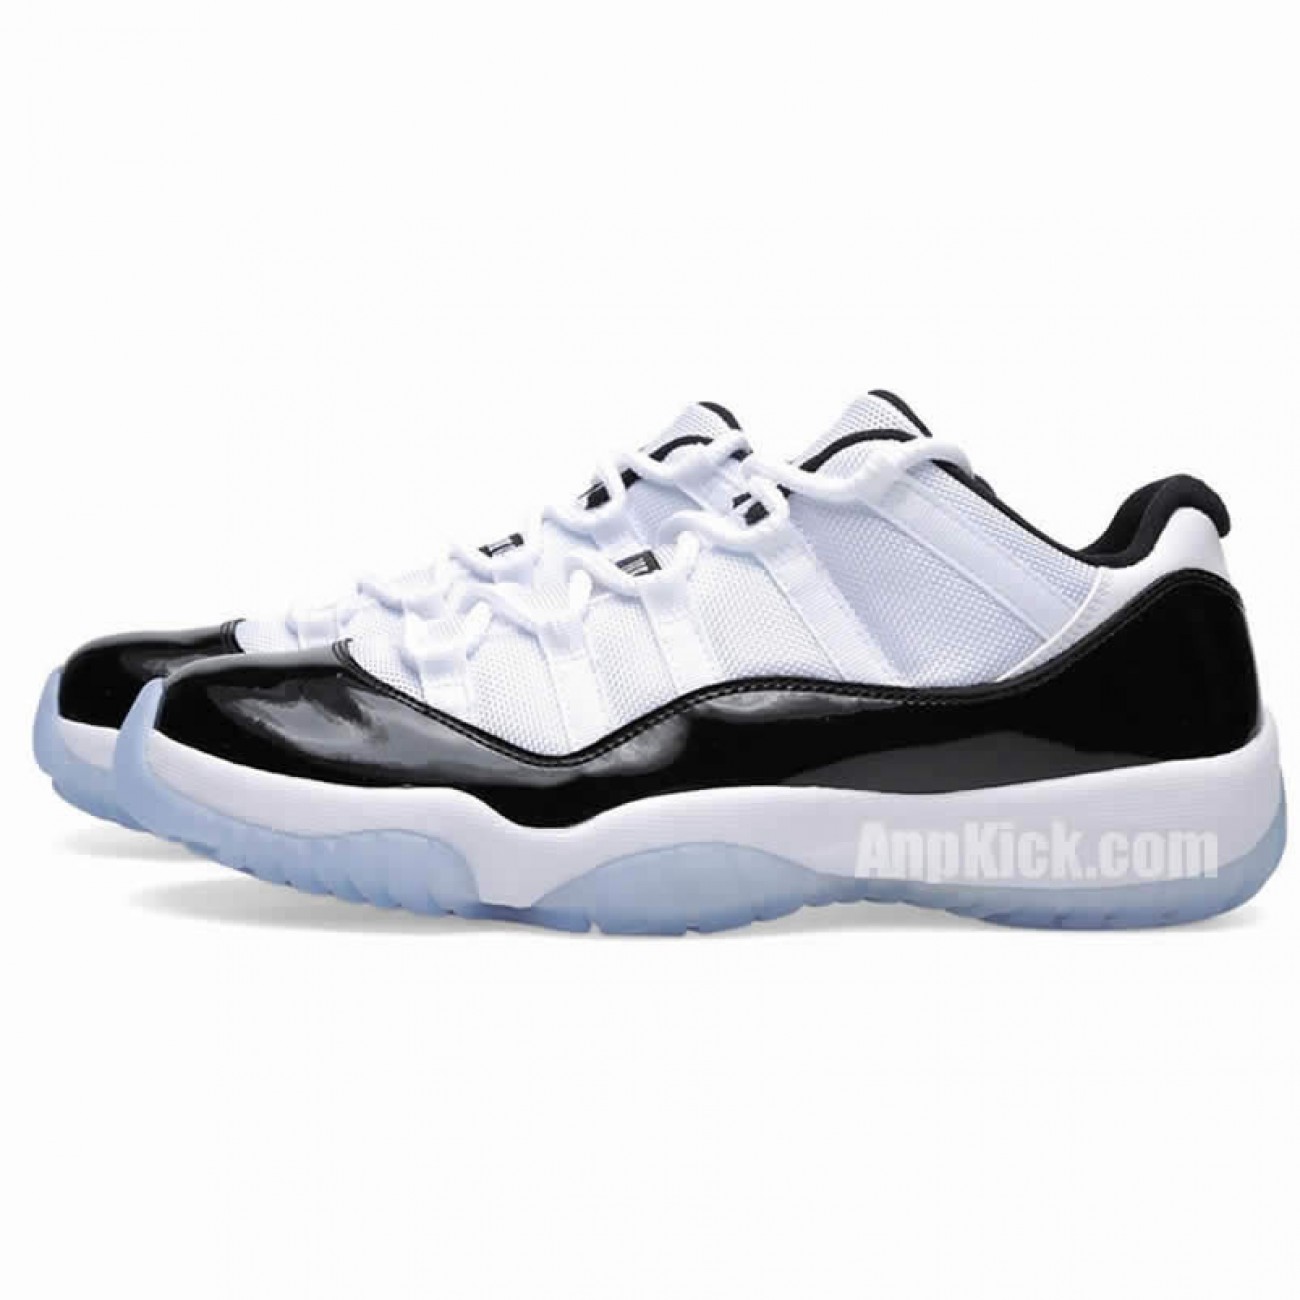 Air Jordan 11 Low Concord Mens & BG (GS) White/Black AJ11 Shoes 528896-153